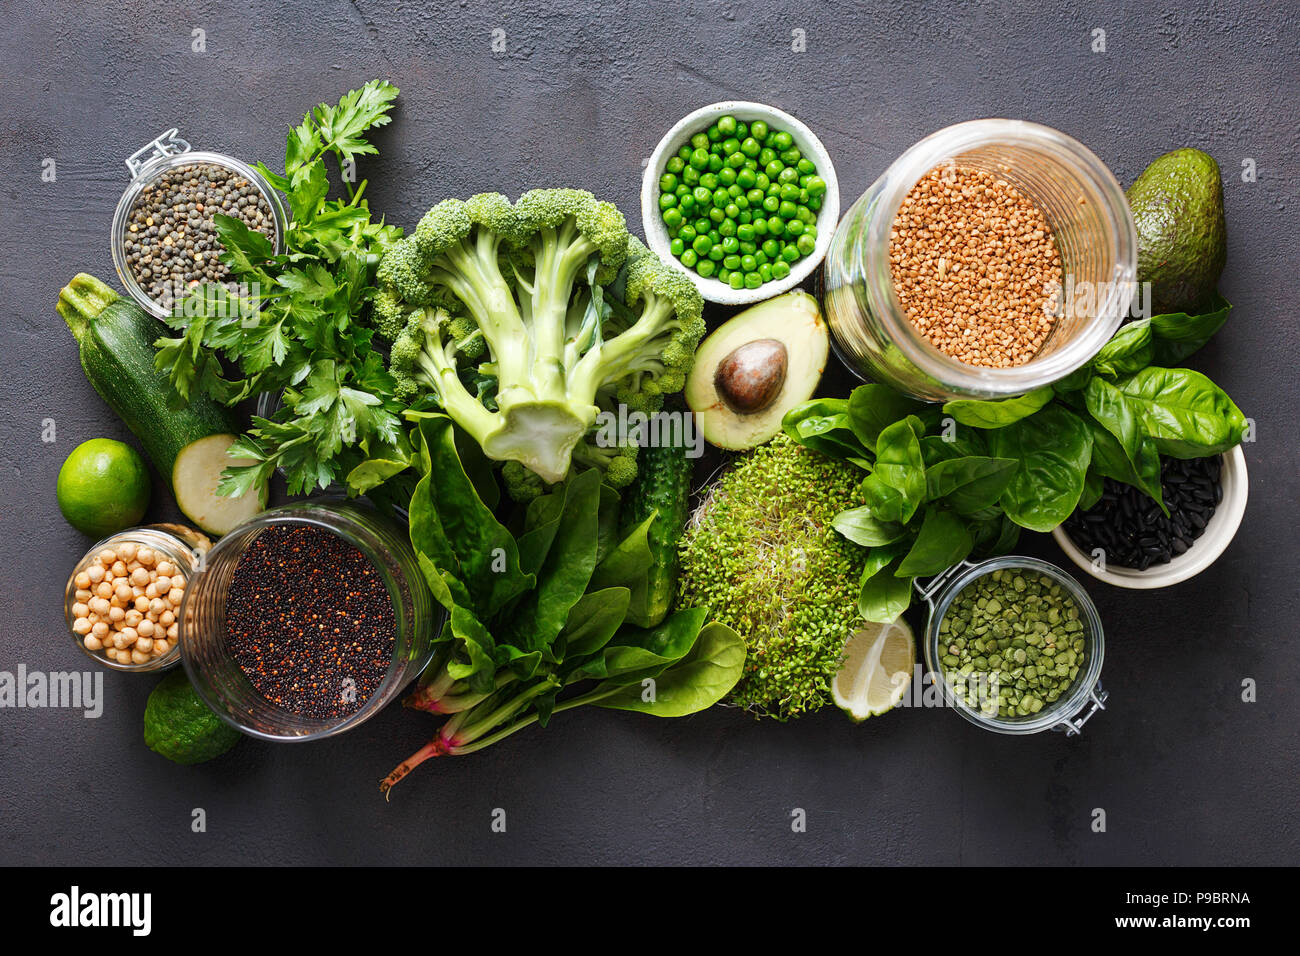 Establezca las verduras crudas y cereales como fuente de proteínas para los vegetarianos: Pepino, Lucerna, calabacín, espinacas, albahaca, arvejas, el aguacate, el brócoli, l Foto de stock